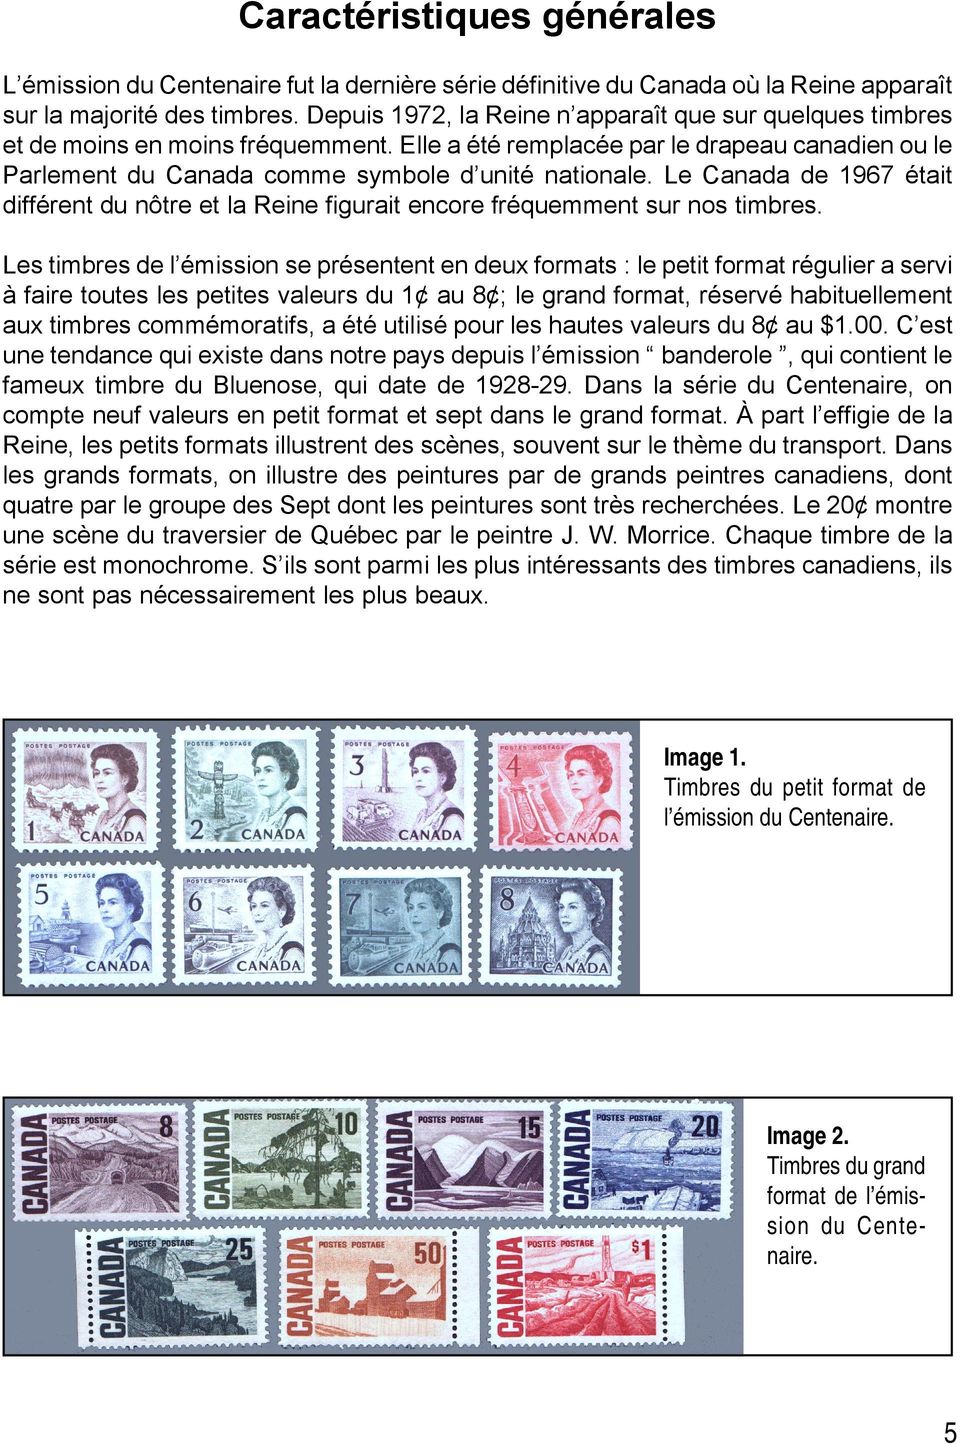 Le Canada de 1967 était différent du nôtre et la Reine figurait encore fréquemment sur nos timbres.